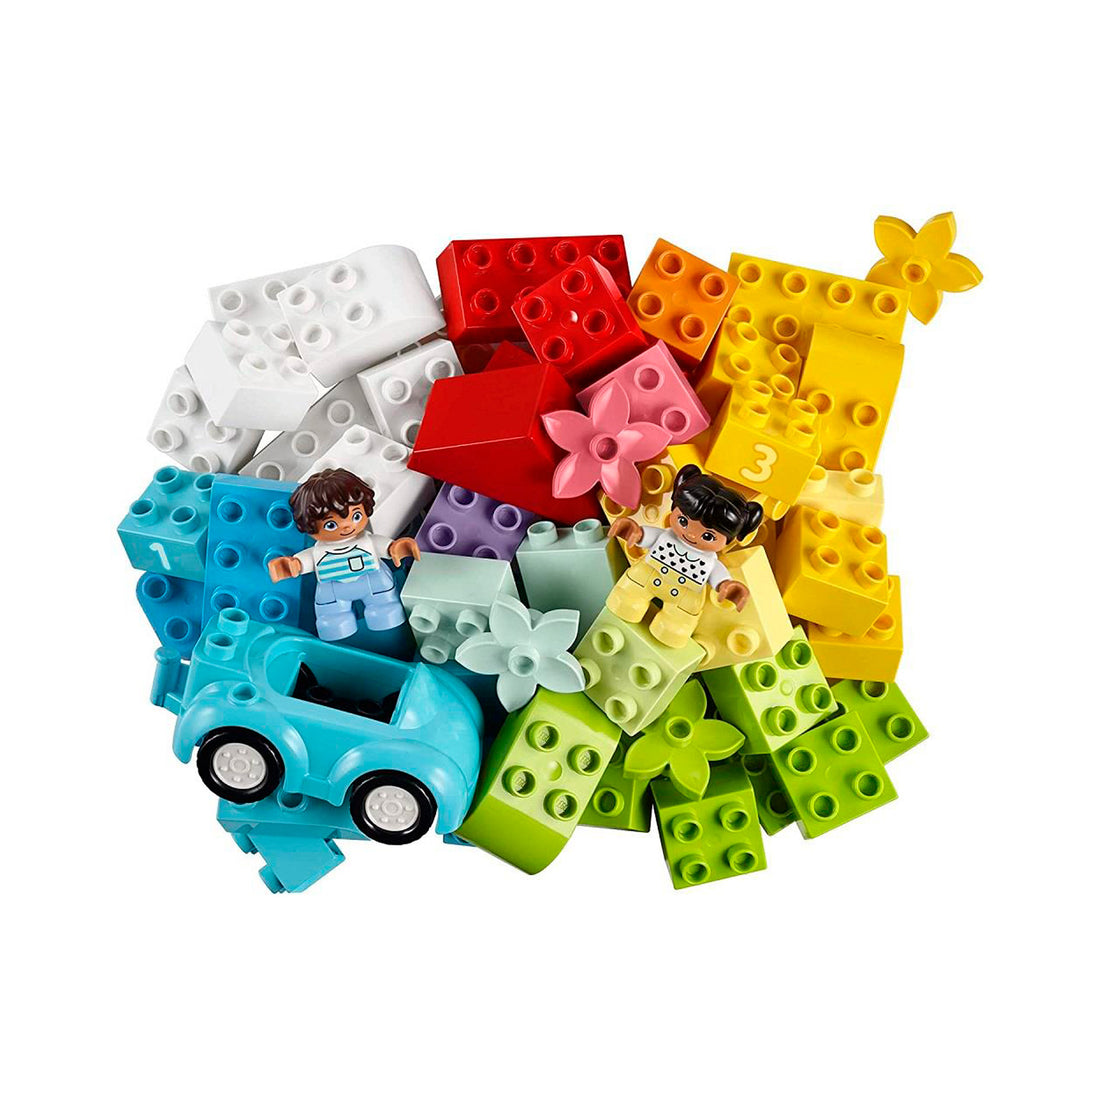 Lego Duplo - Caixa Clássica